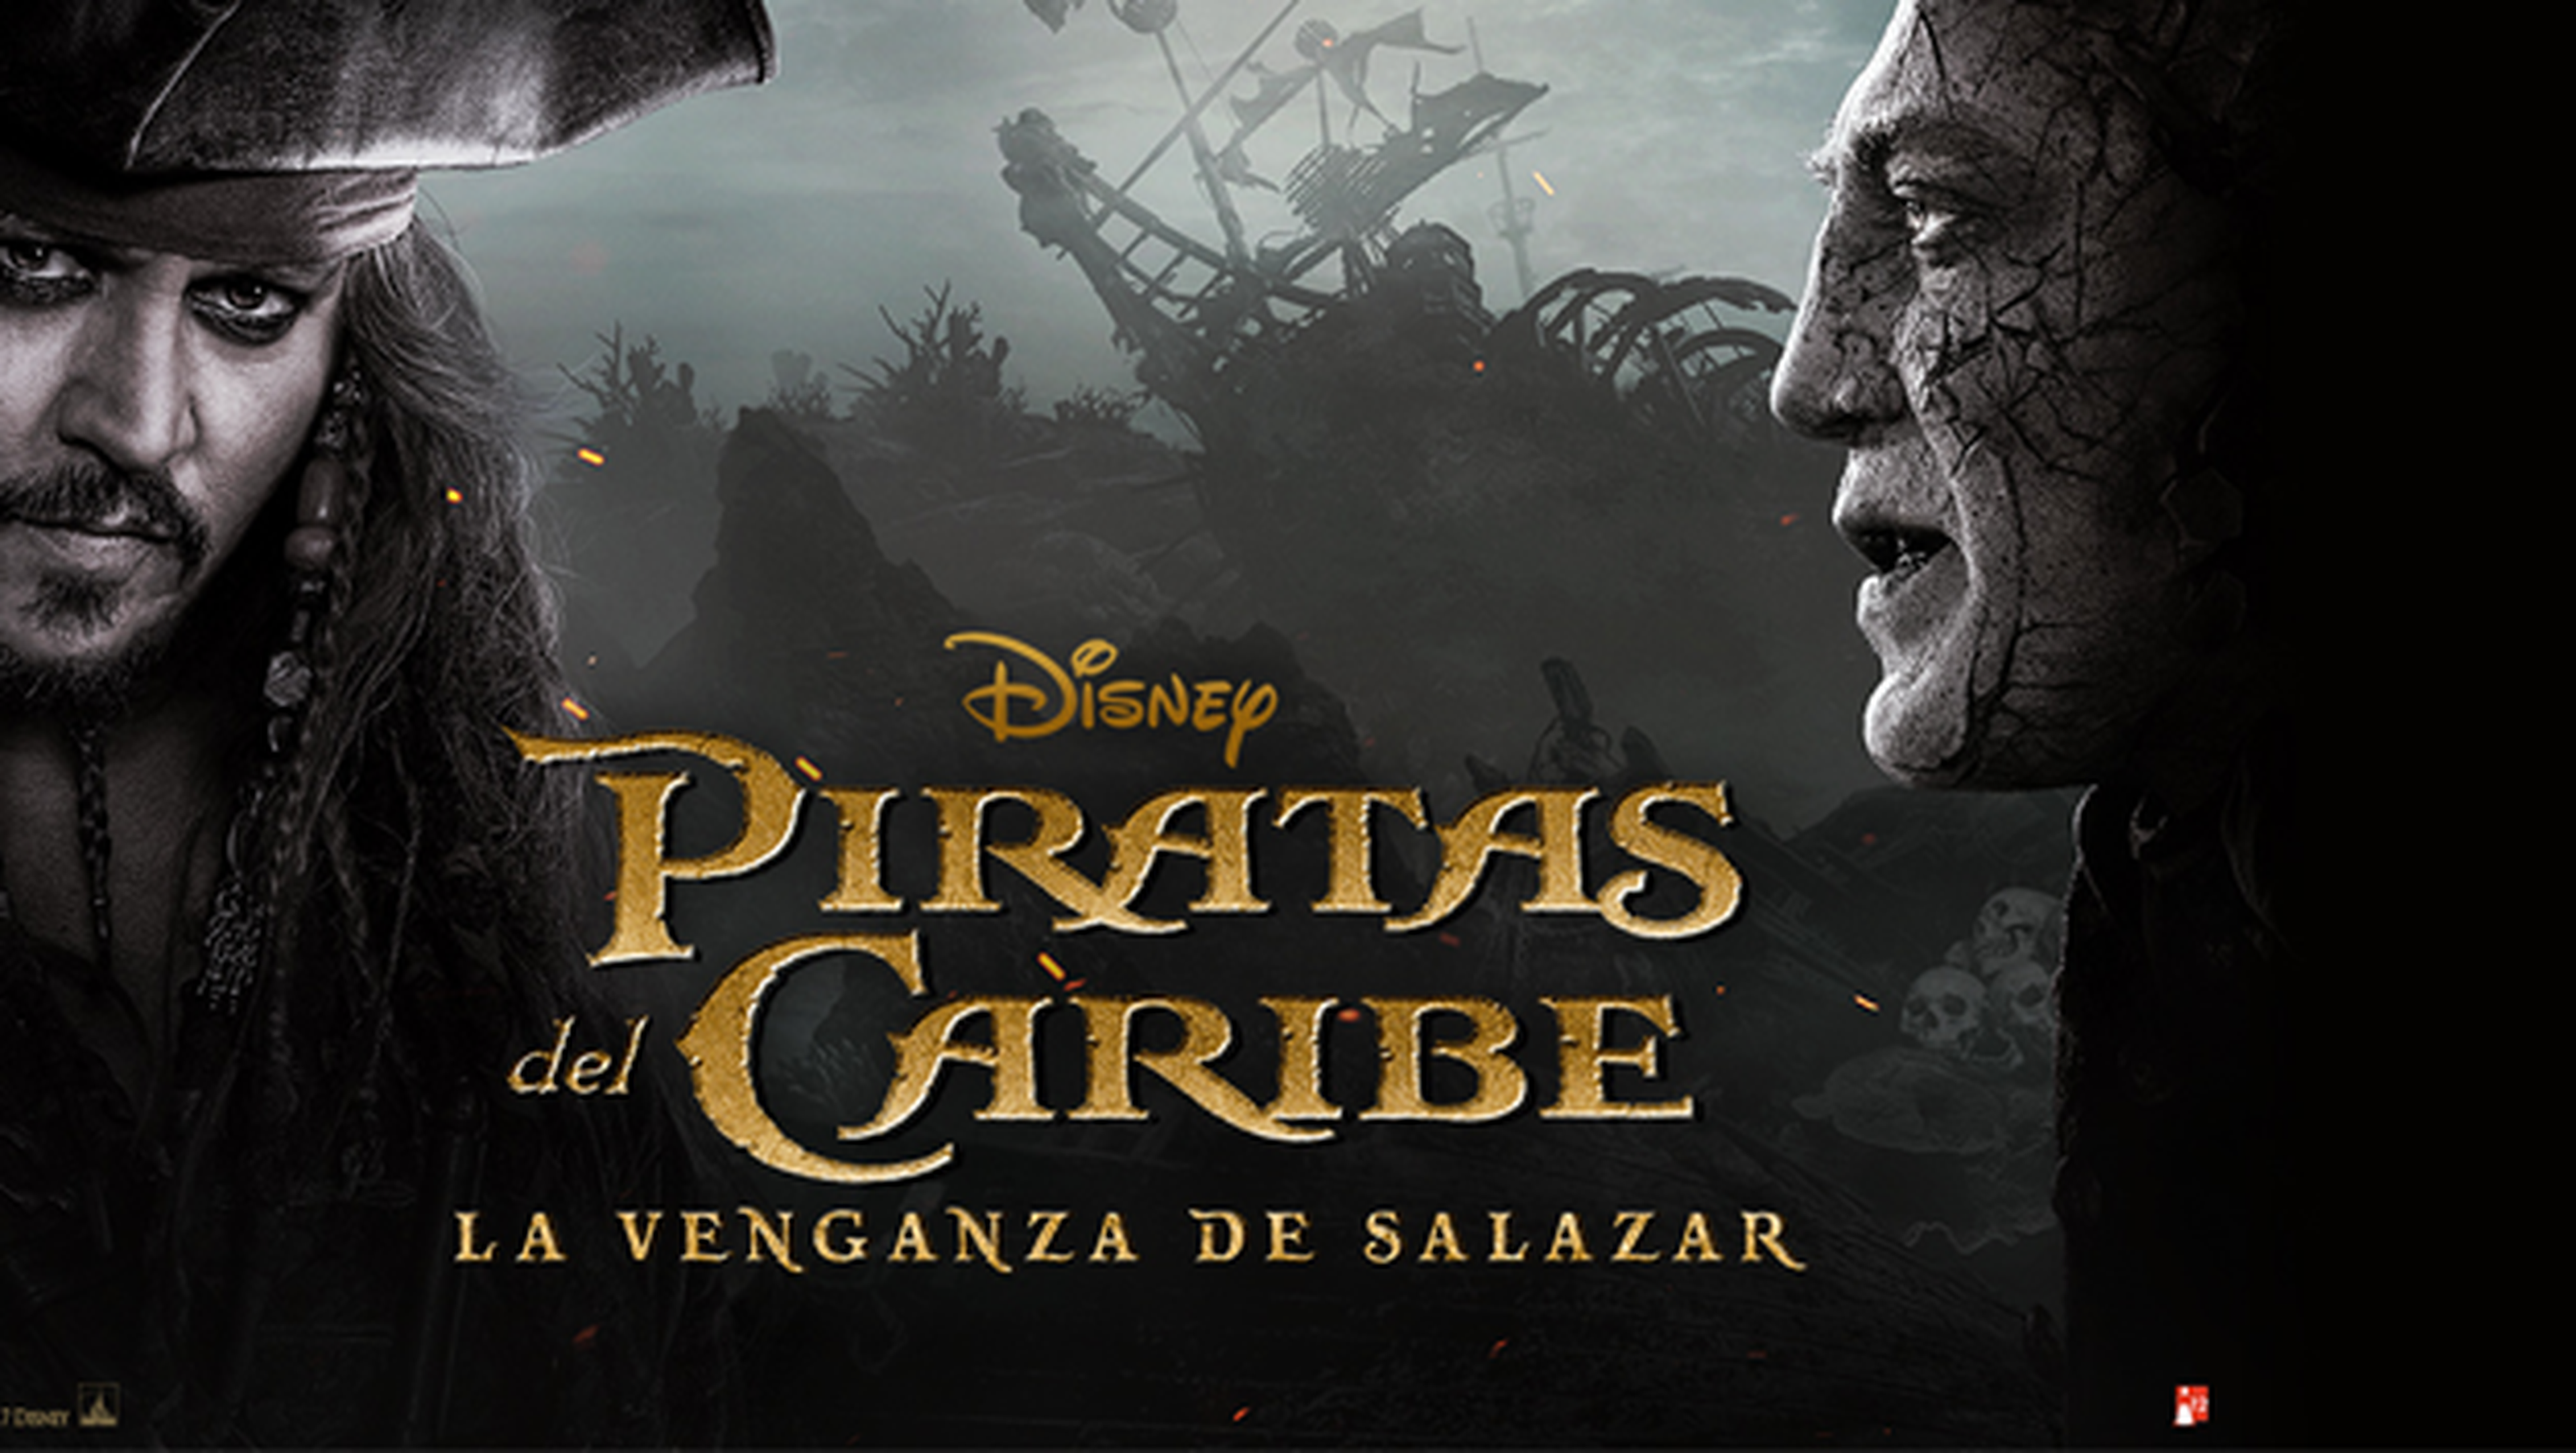 Piratas del Caribe 5, de Disney, se estrena el 26 de mayo en España